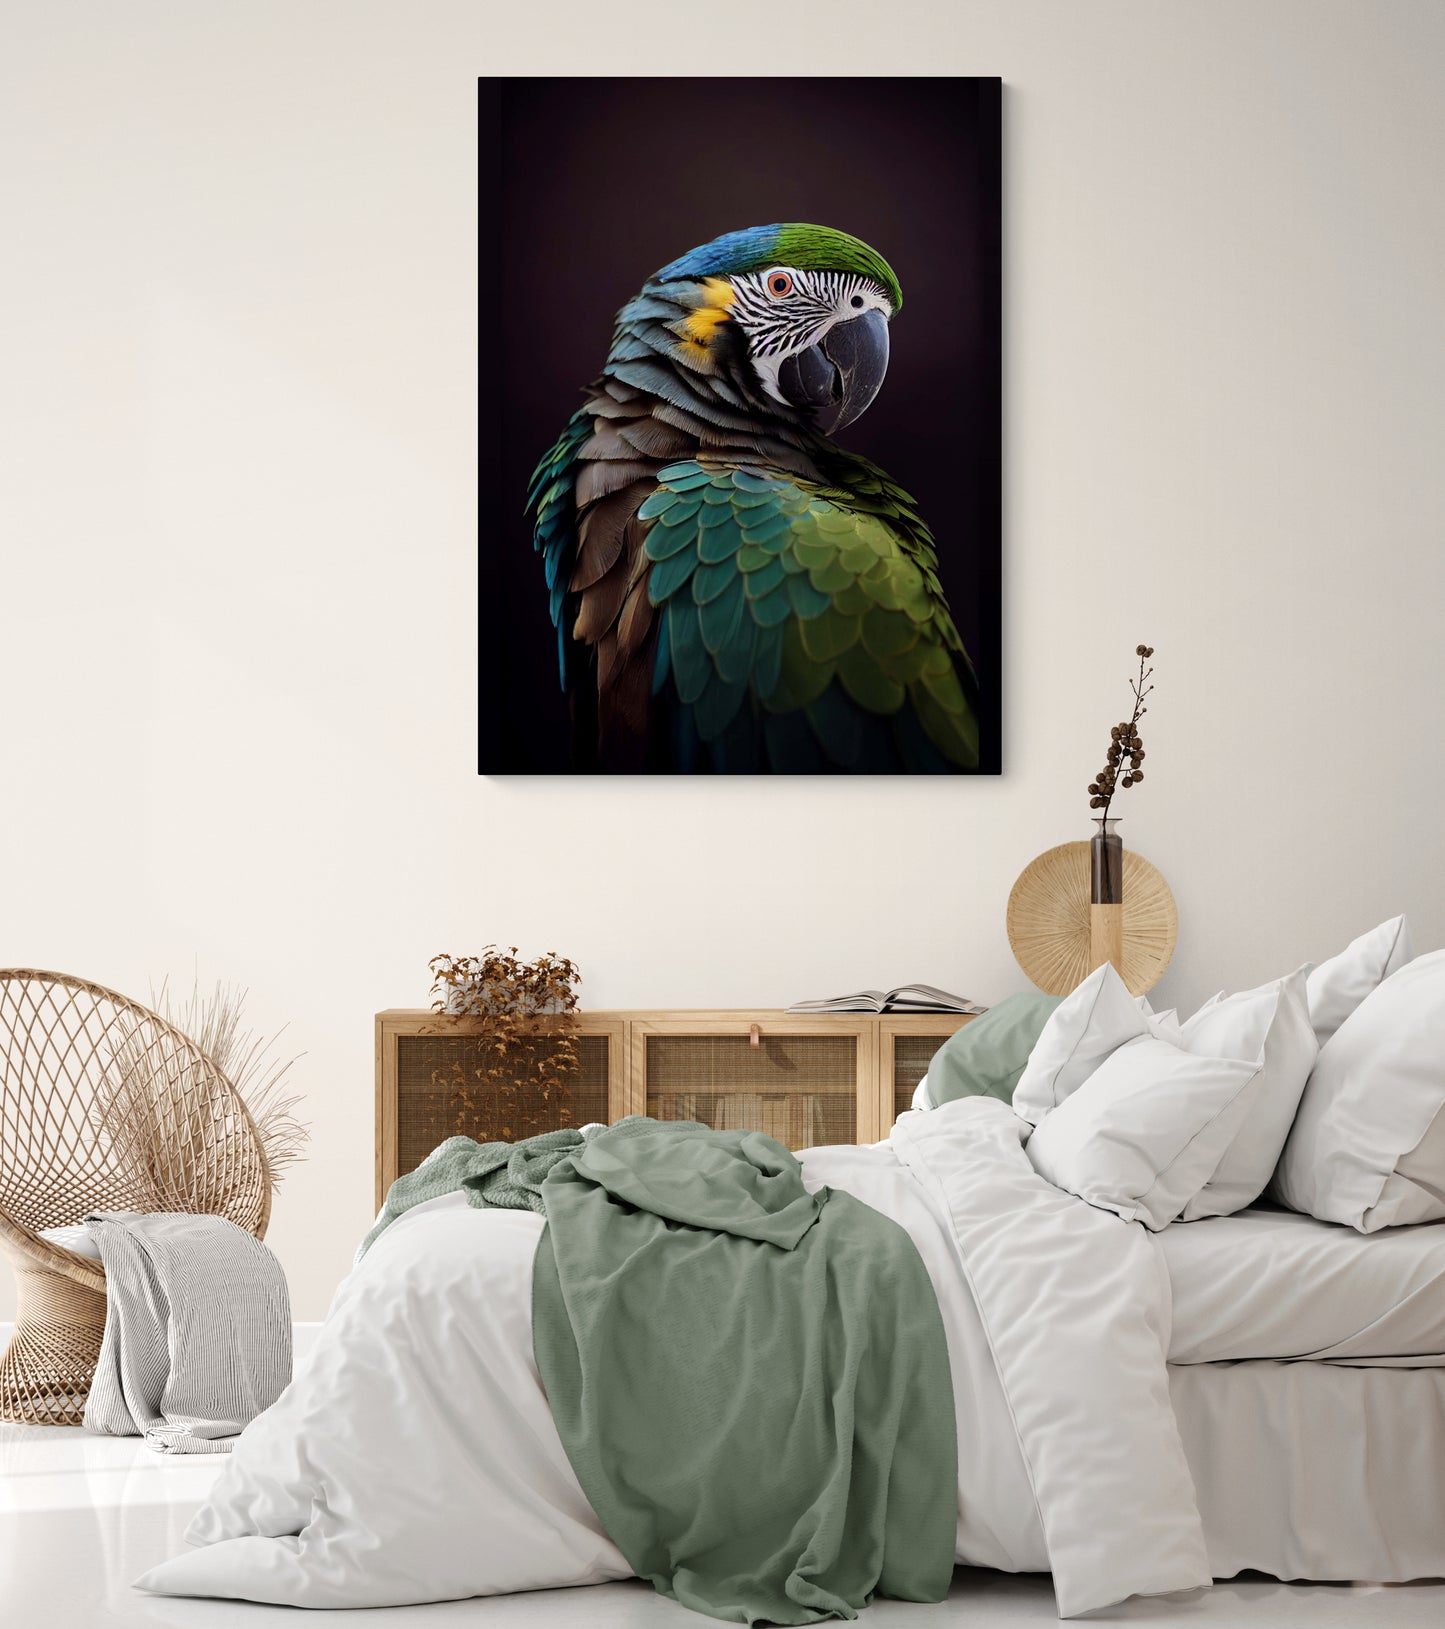 Harmonie parfaite entre le tableau perroquet et l'atmosphère cocooning d'une chambre d'adulte.